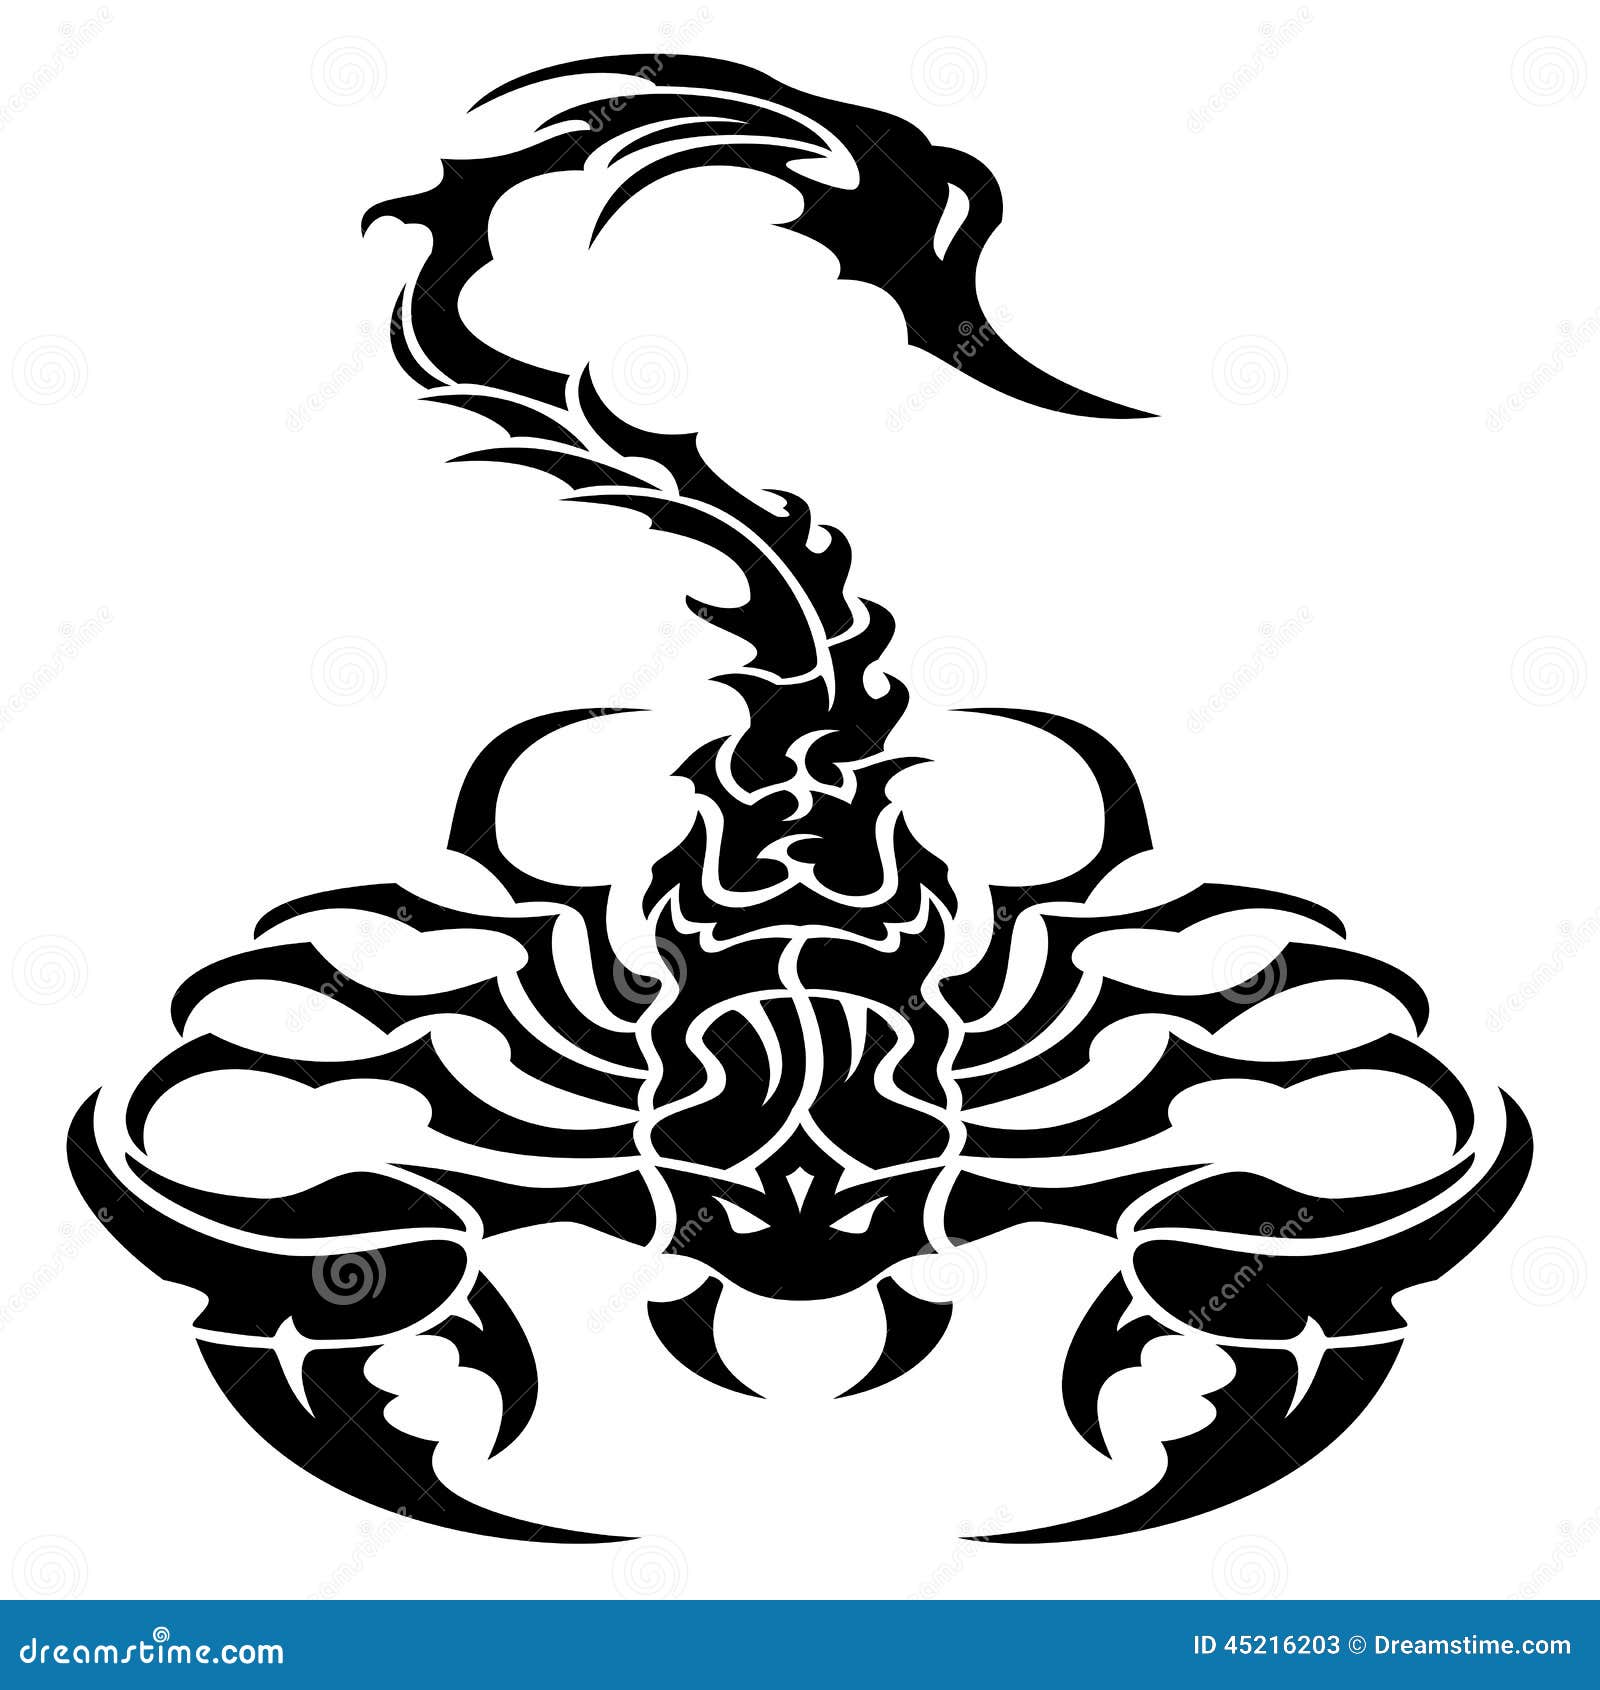 50 Tribal Scorpion Tattoos Illustrations RoyaltyFree Vector Graphics   Clip Art  iStock